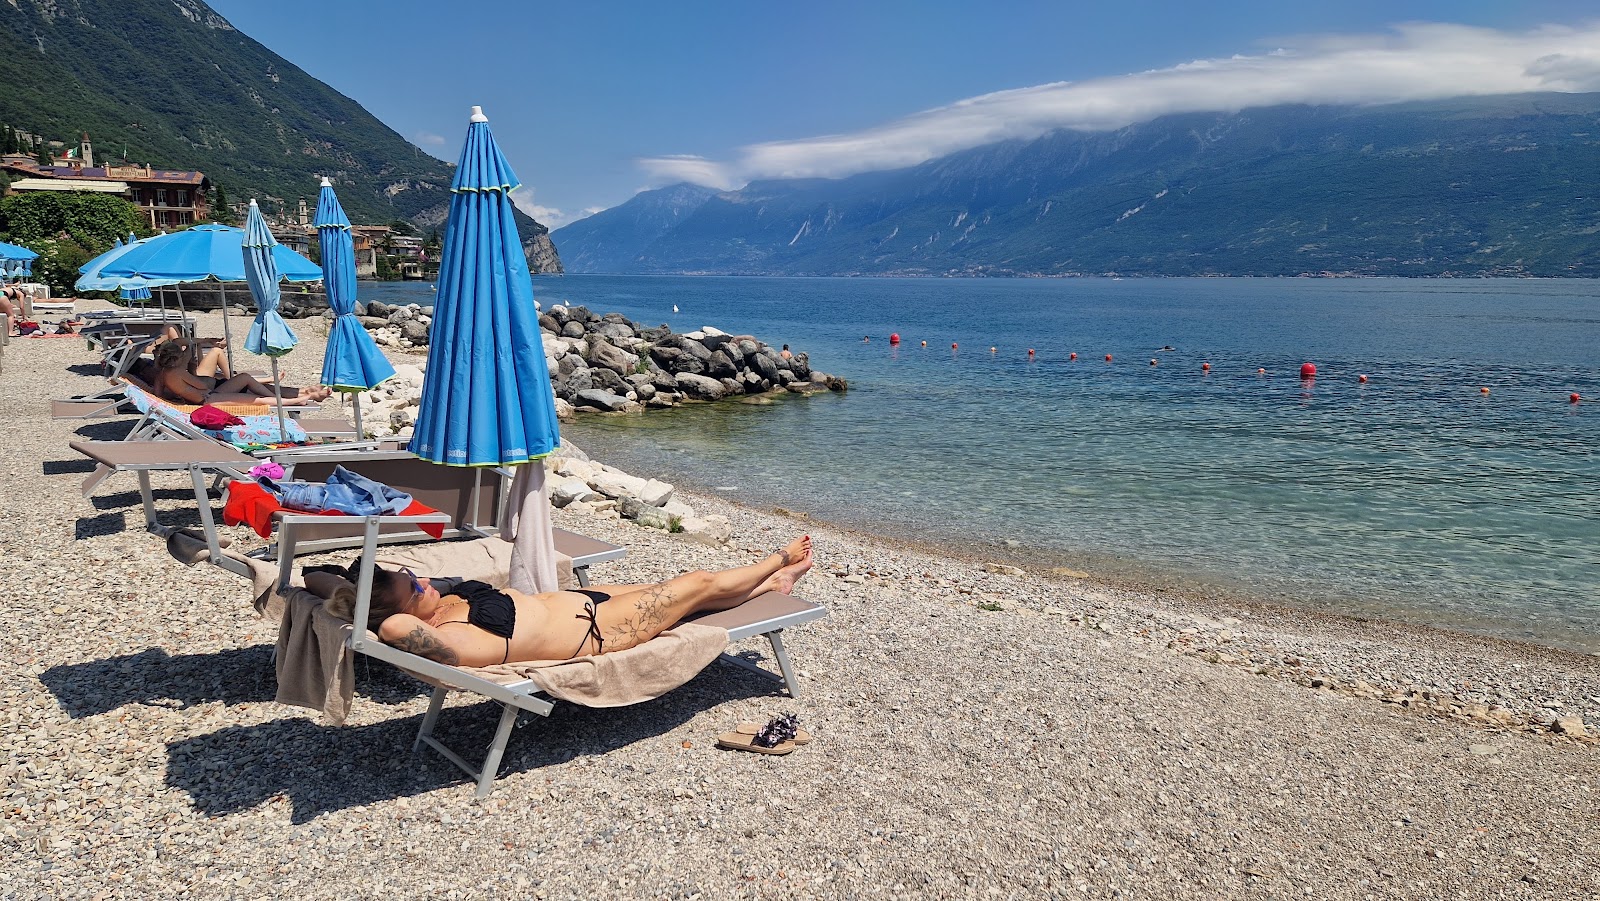 Spiaggia Giallo Limone的照片 带有蓝色纯水表面